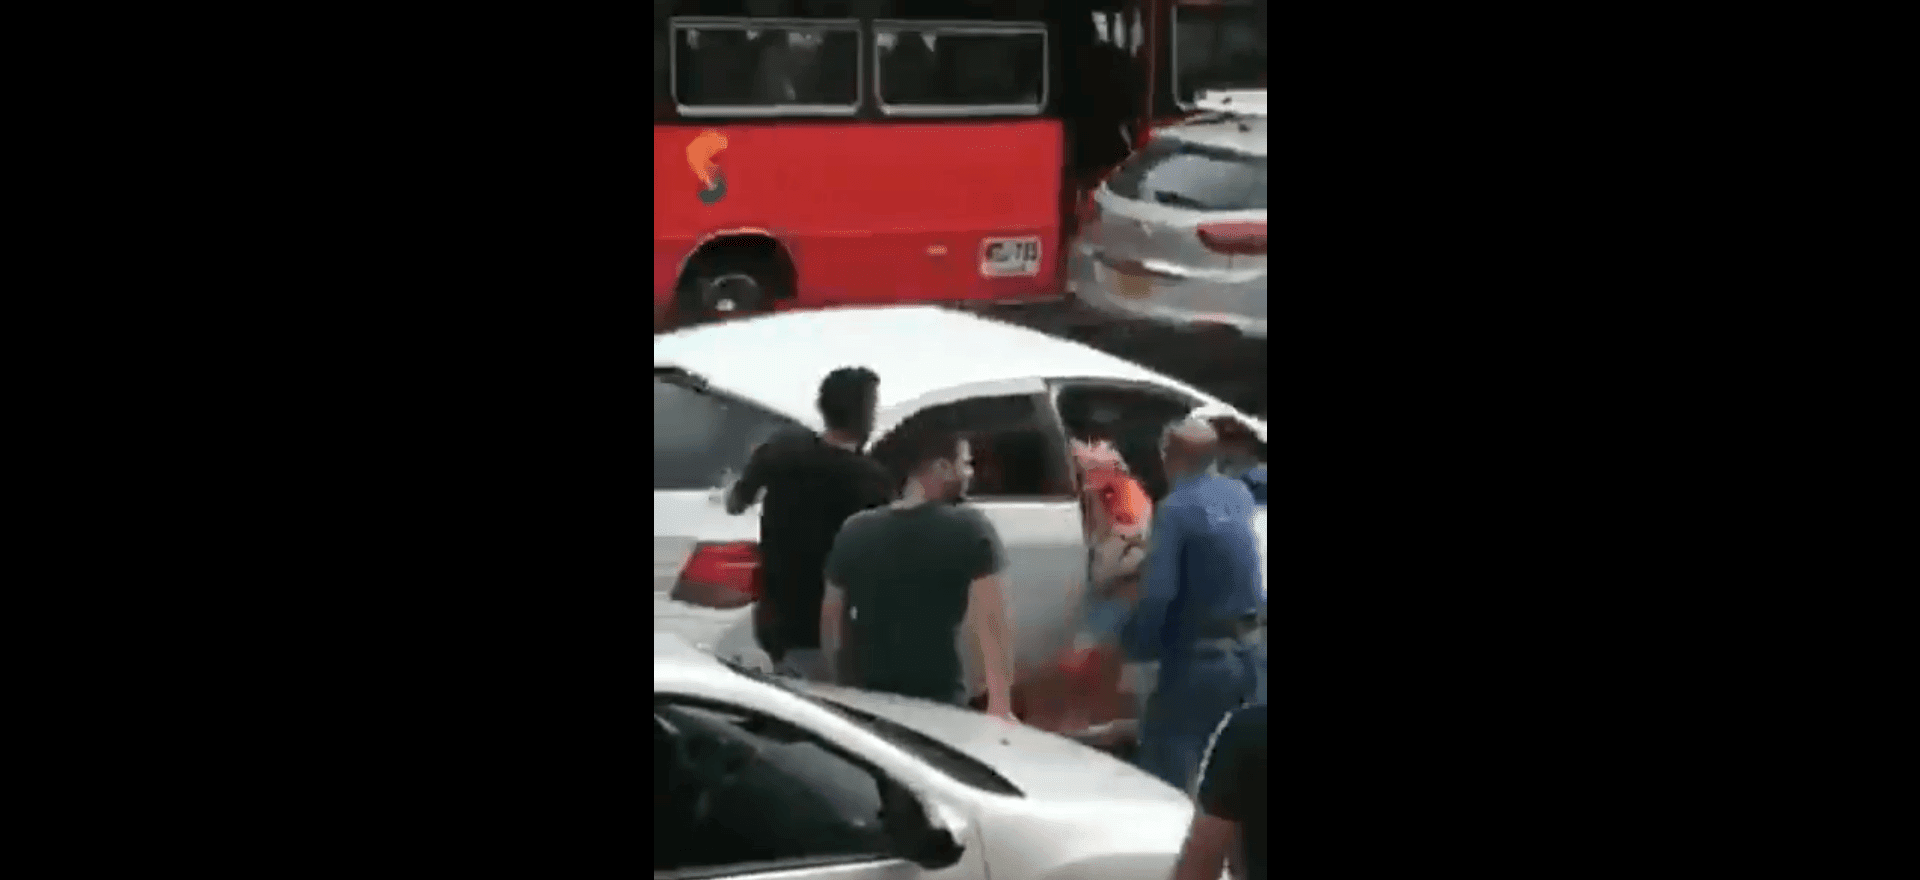 El hombre arrancó el auto sin importarle su seguridad. Fuente: Twitter/anonymus_sin